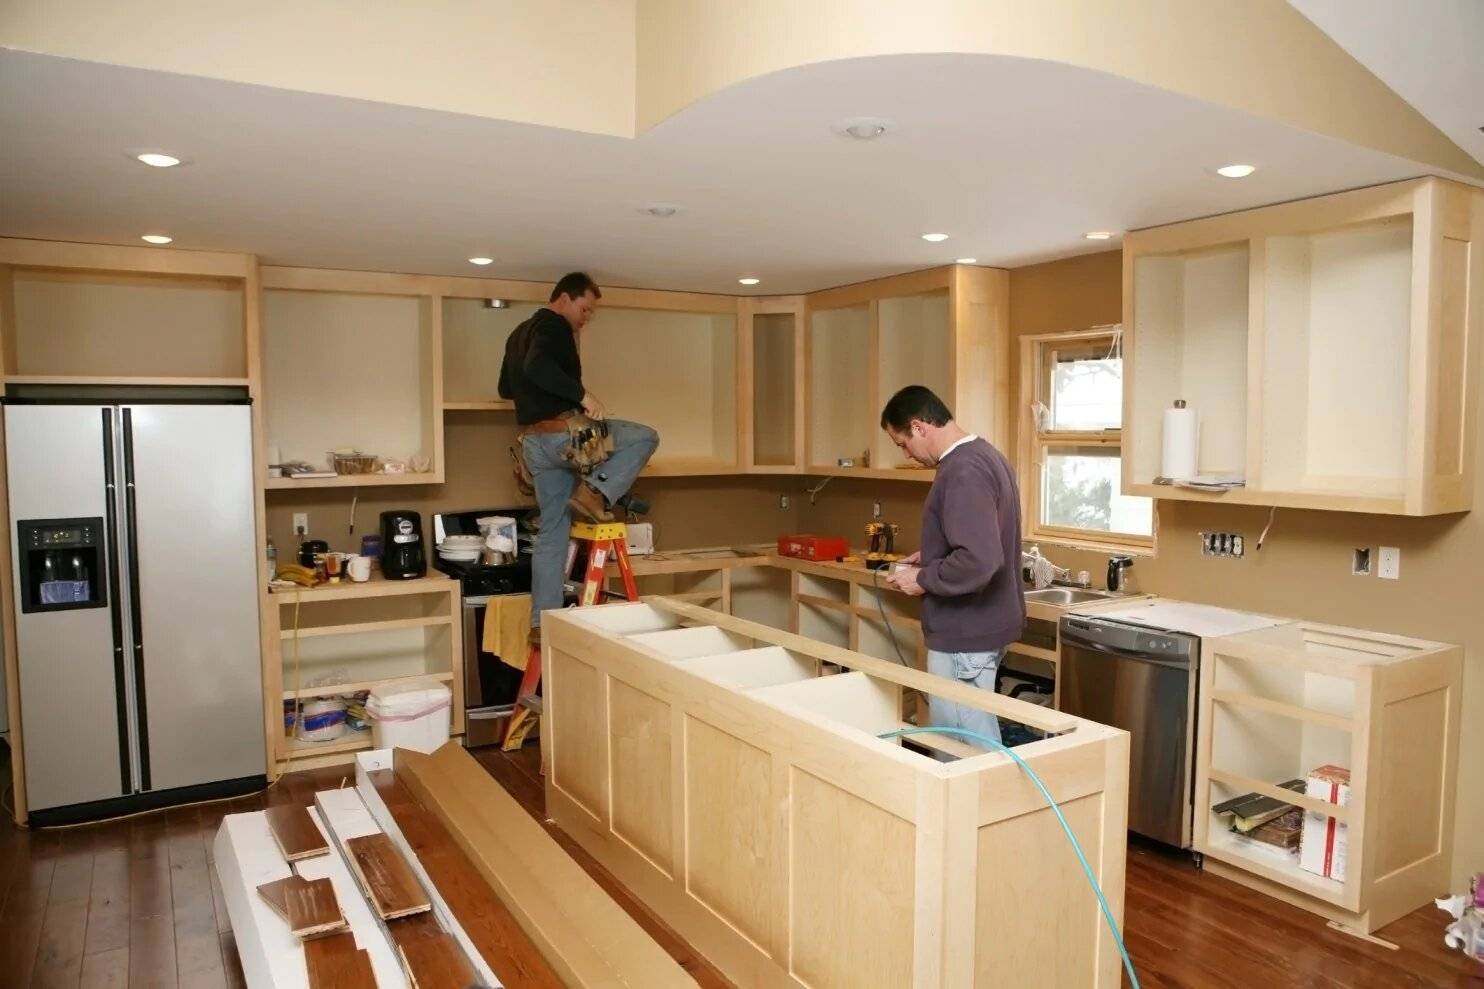 Ремонт мебели как бизнес от а до я. как заработать на ремонте кухонной мебели? :: businessman.ru